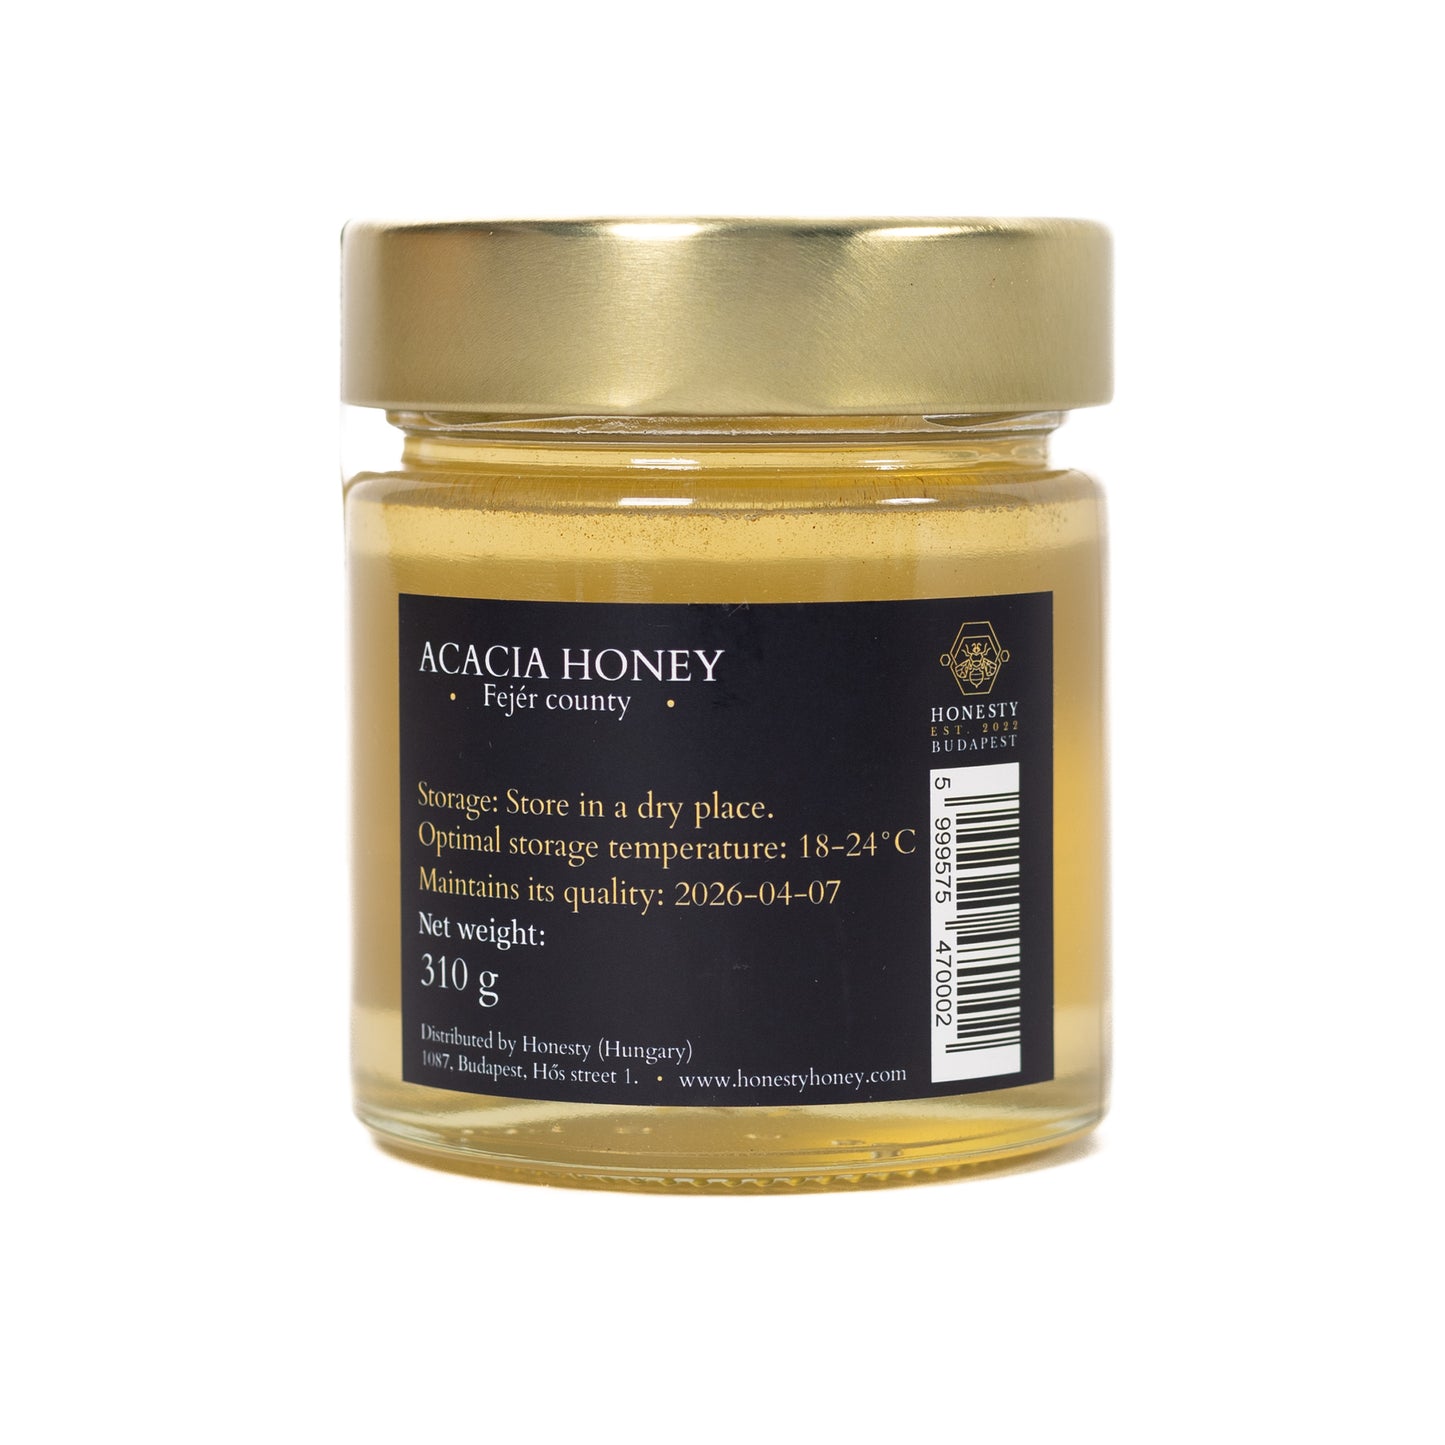 Acacia honey 310g